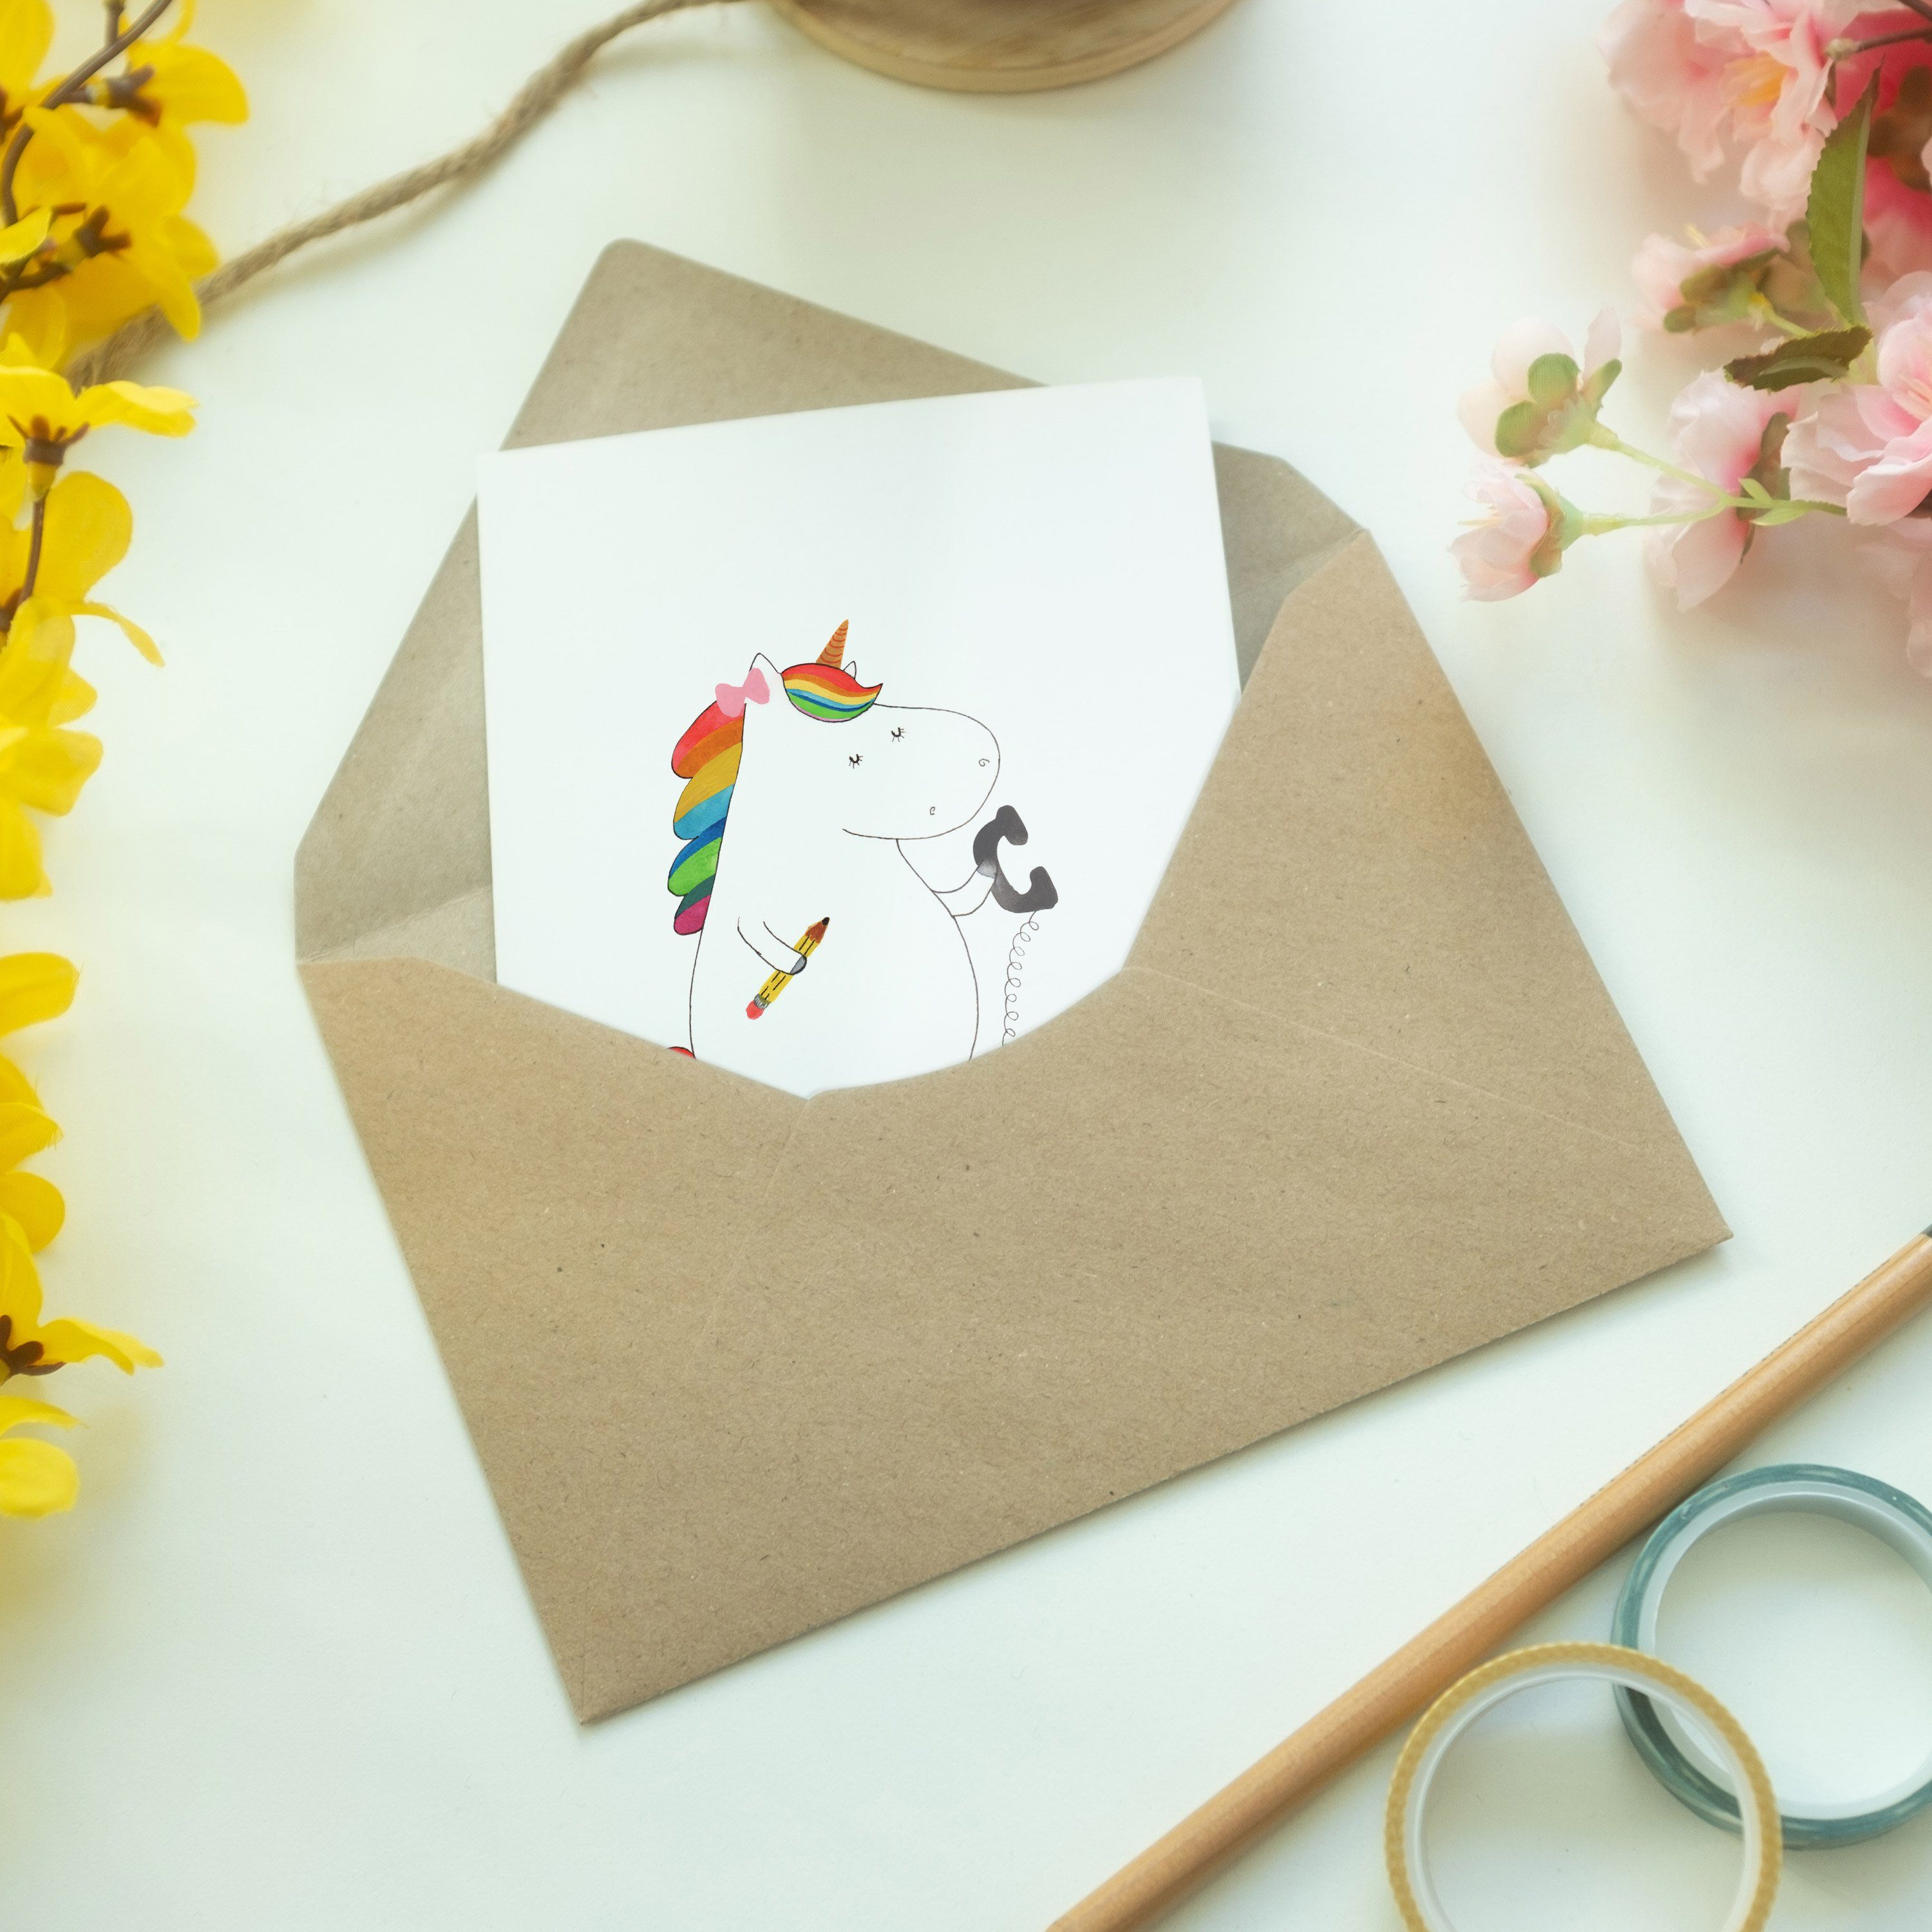 Mr. & Mrs. Panda Geschenk, Sekretärin Grußkarte Einhörner, - Einhorn Büro Hochzeitskarte, - Weiß